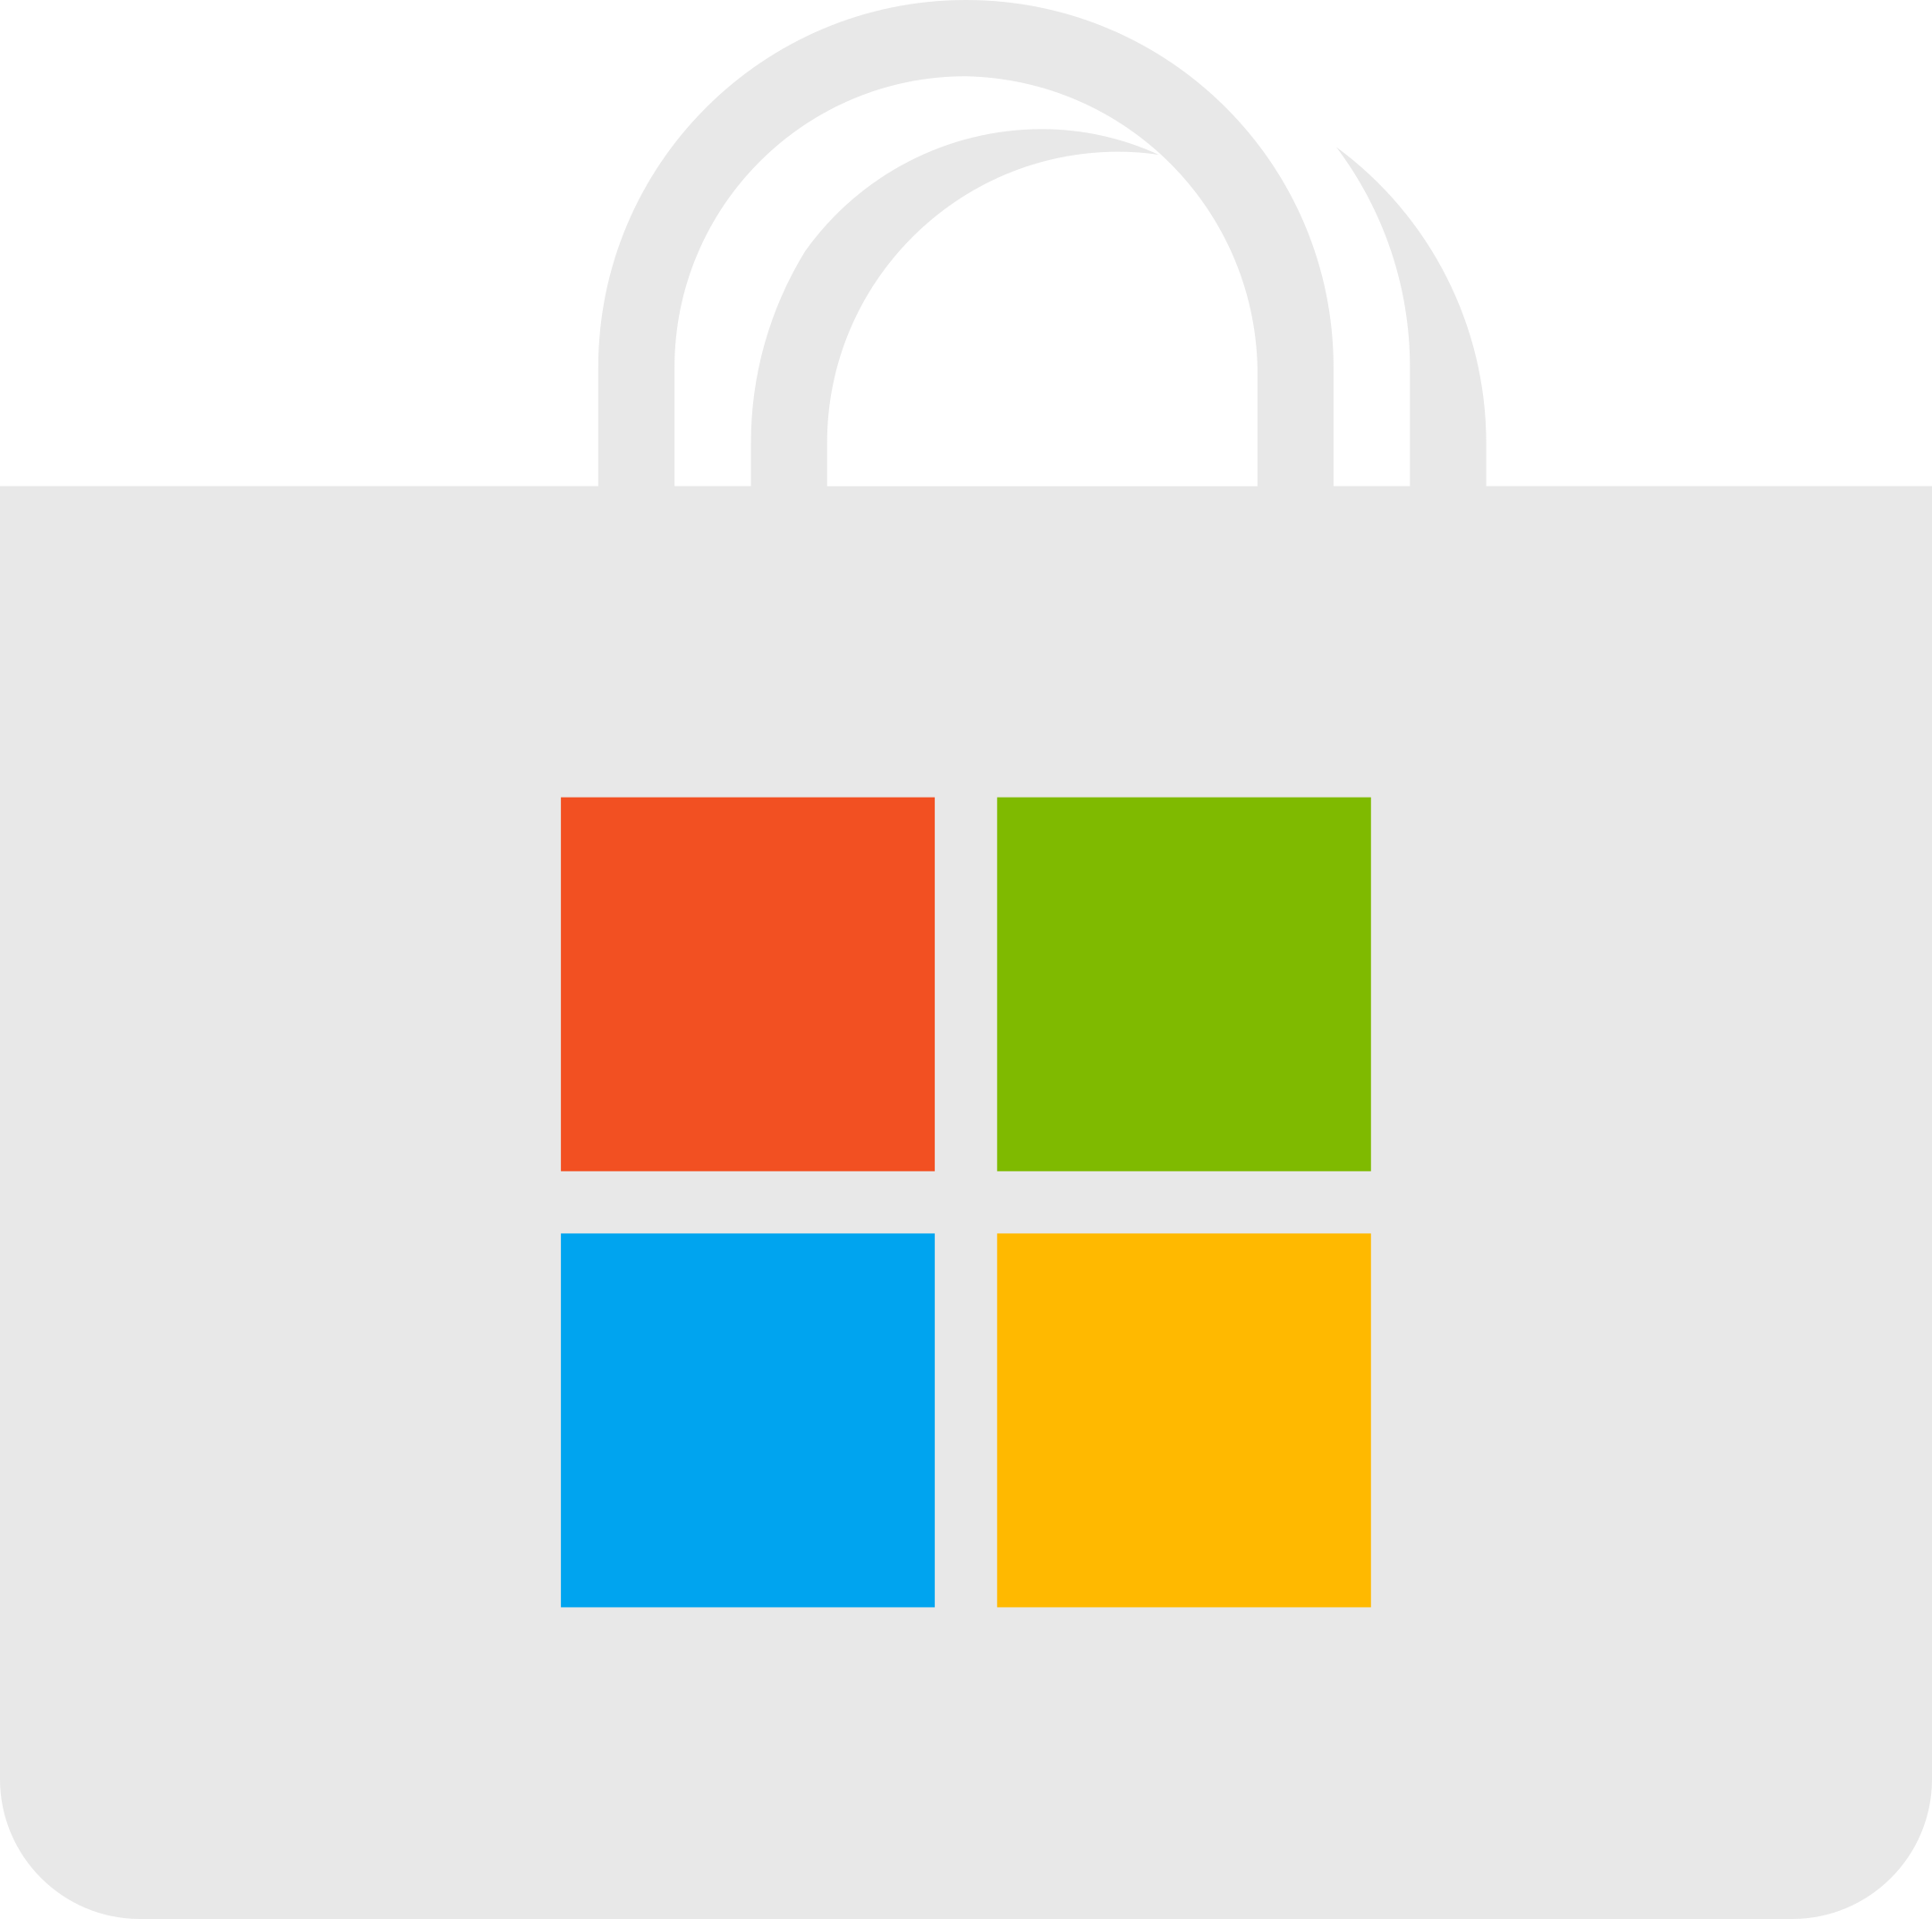 microsoft store logo 1 - Microsoft Store Logo